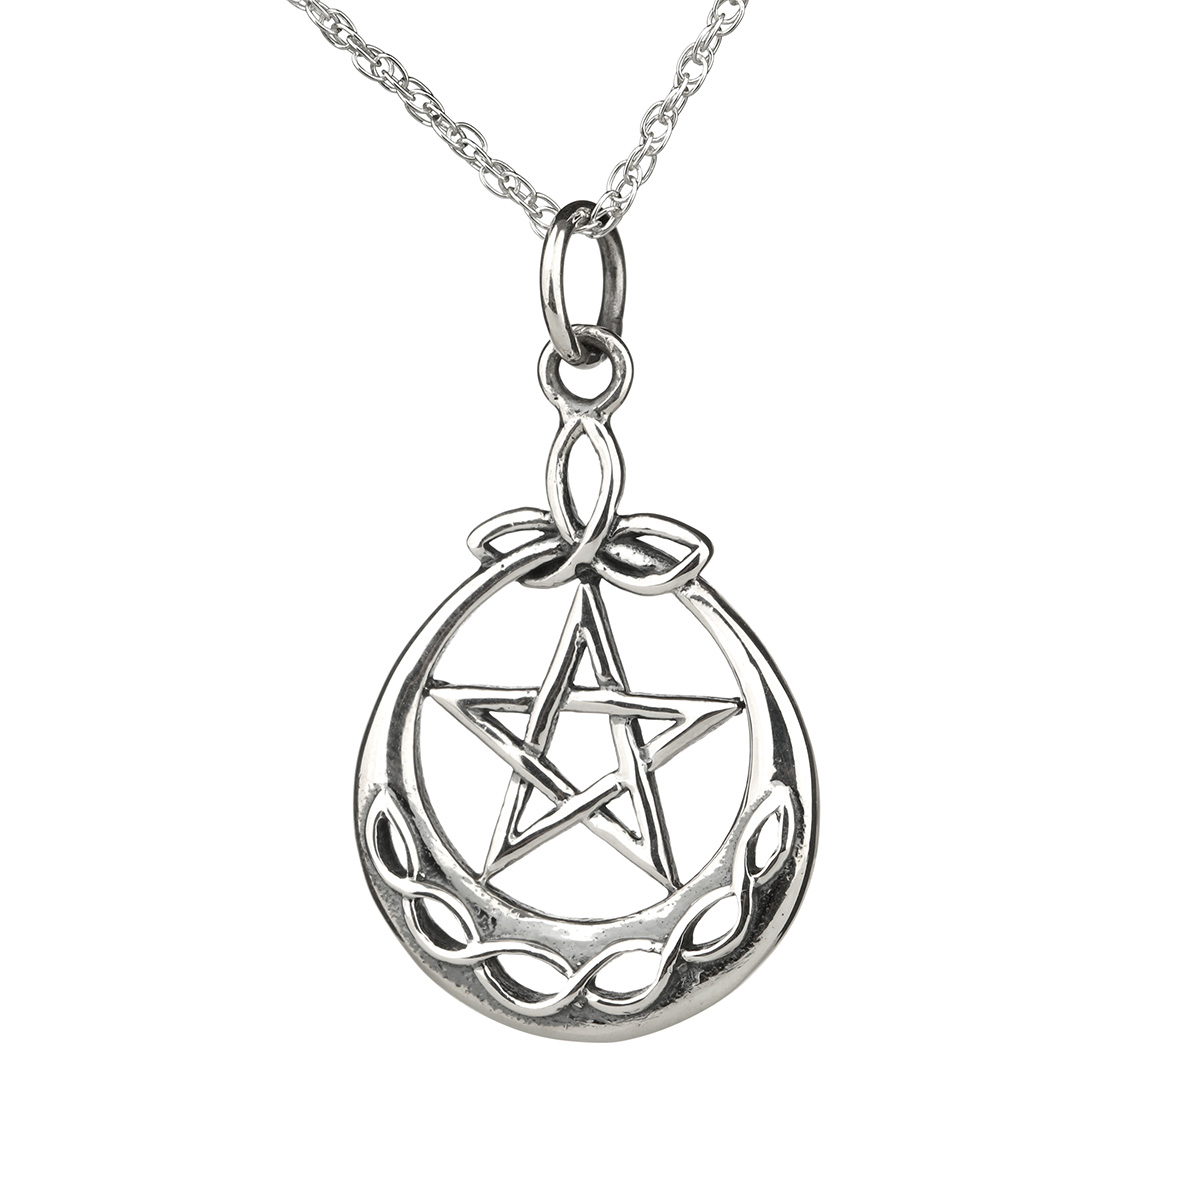 Pentagramm & Triskele Kette aus Sterling Silber - Handgefertigt in Schottland